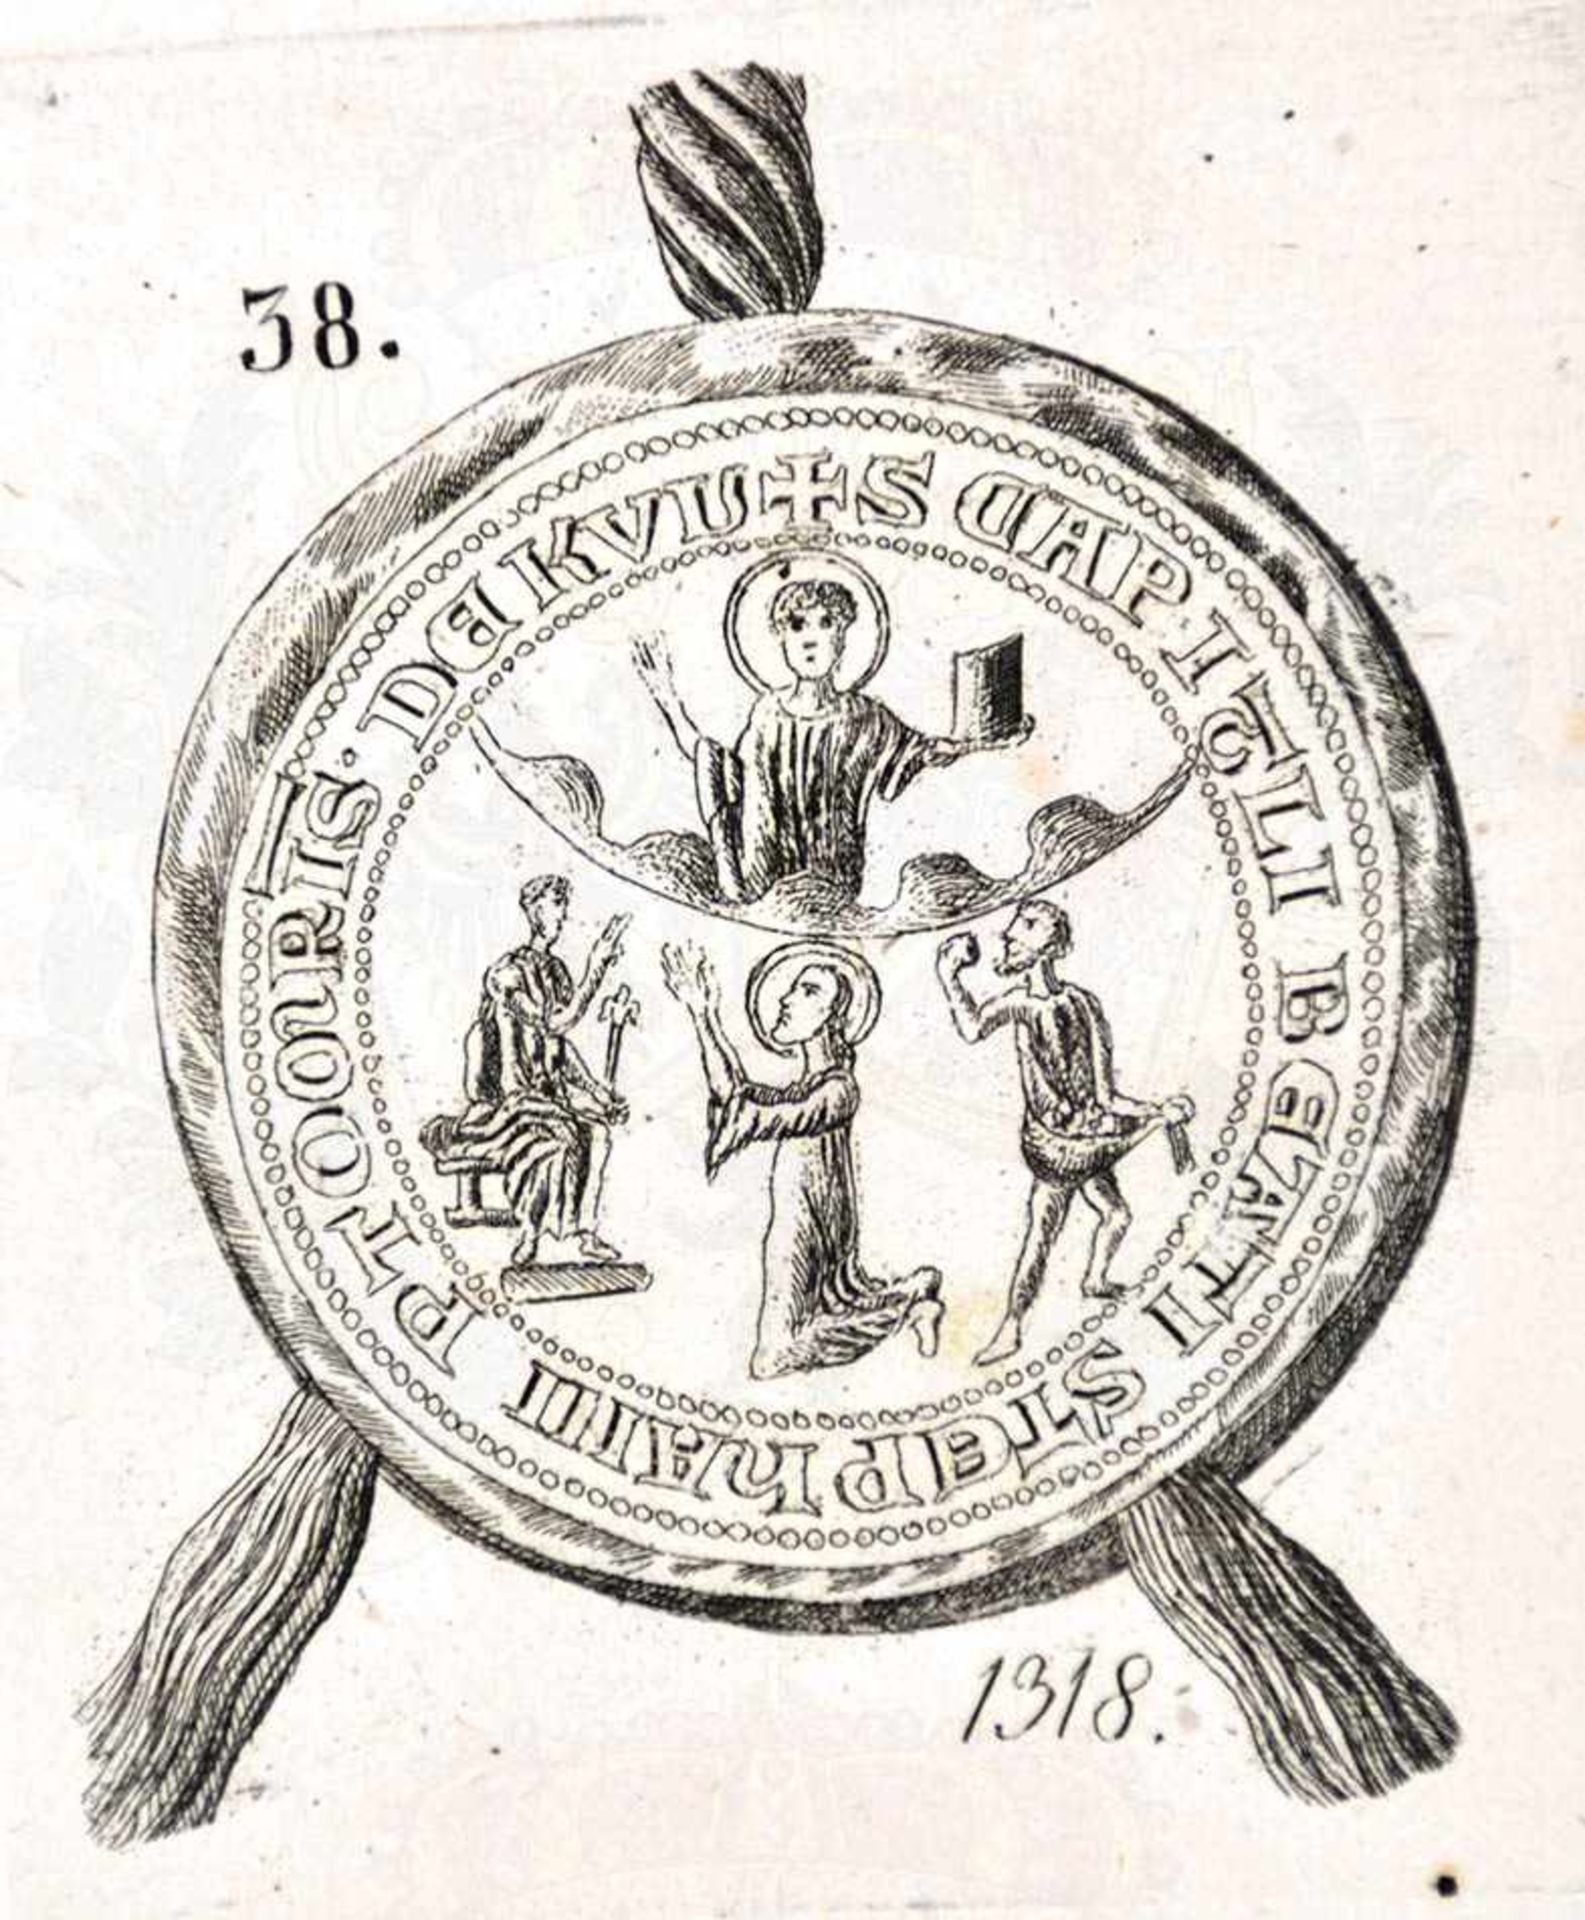 SAMMLUNG 43 STAHLSTICHE, kleinf. Blätter mit Abb. von 1 oder 2 mittelalterlichen Siegeln, um 1850,